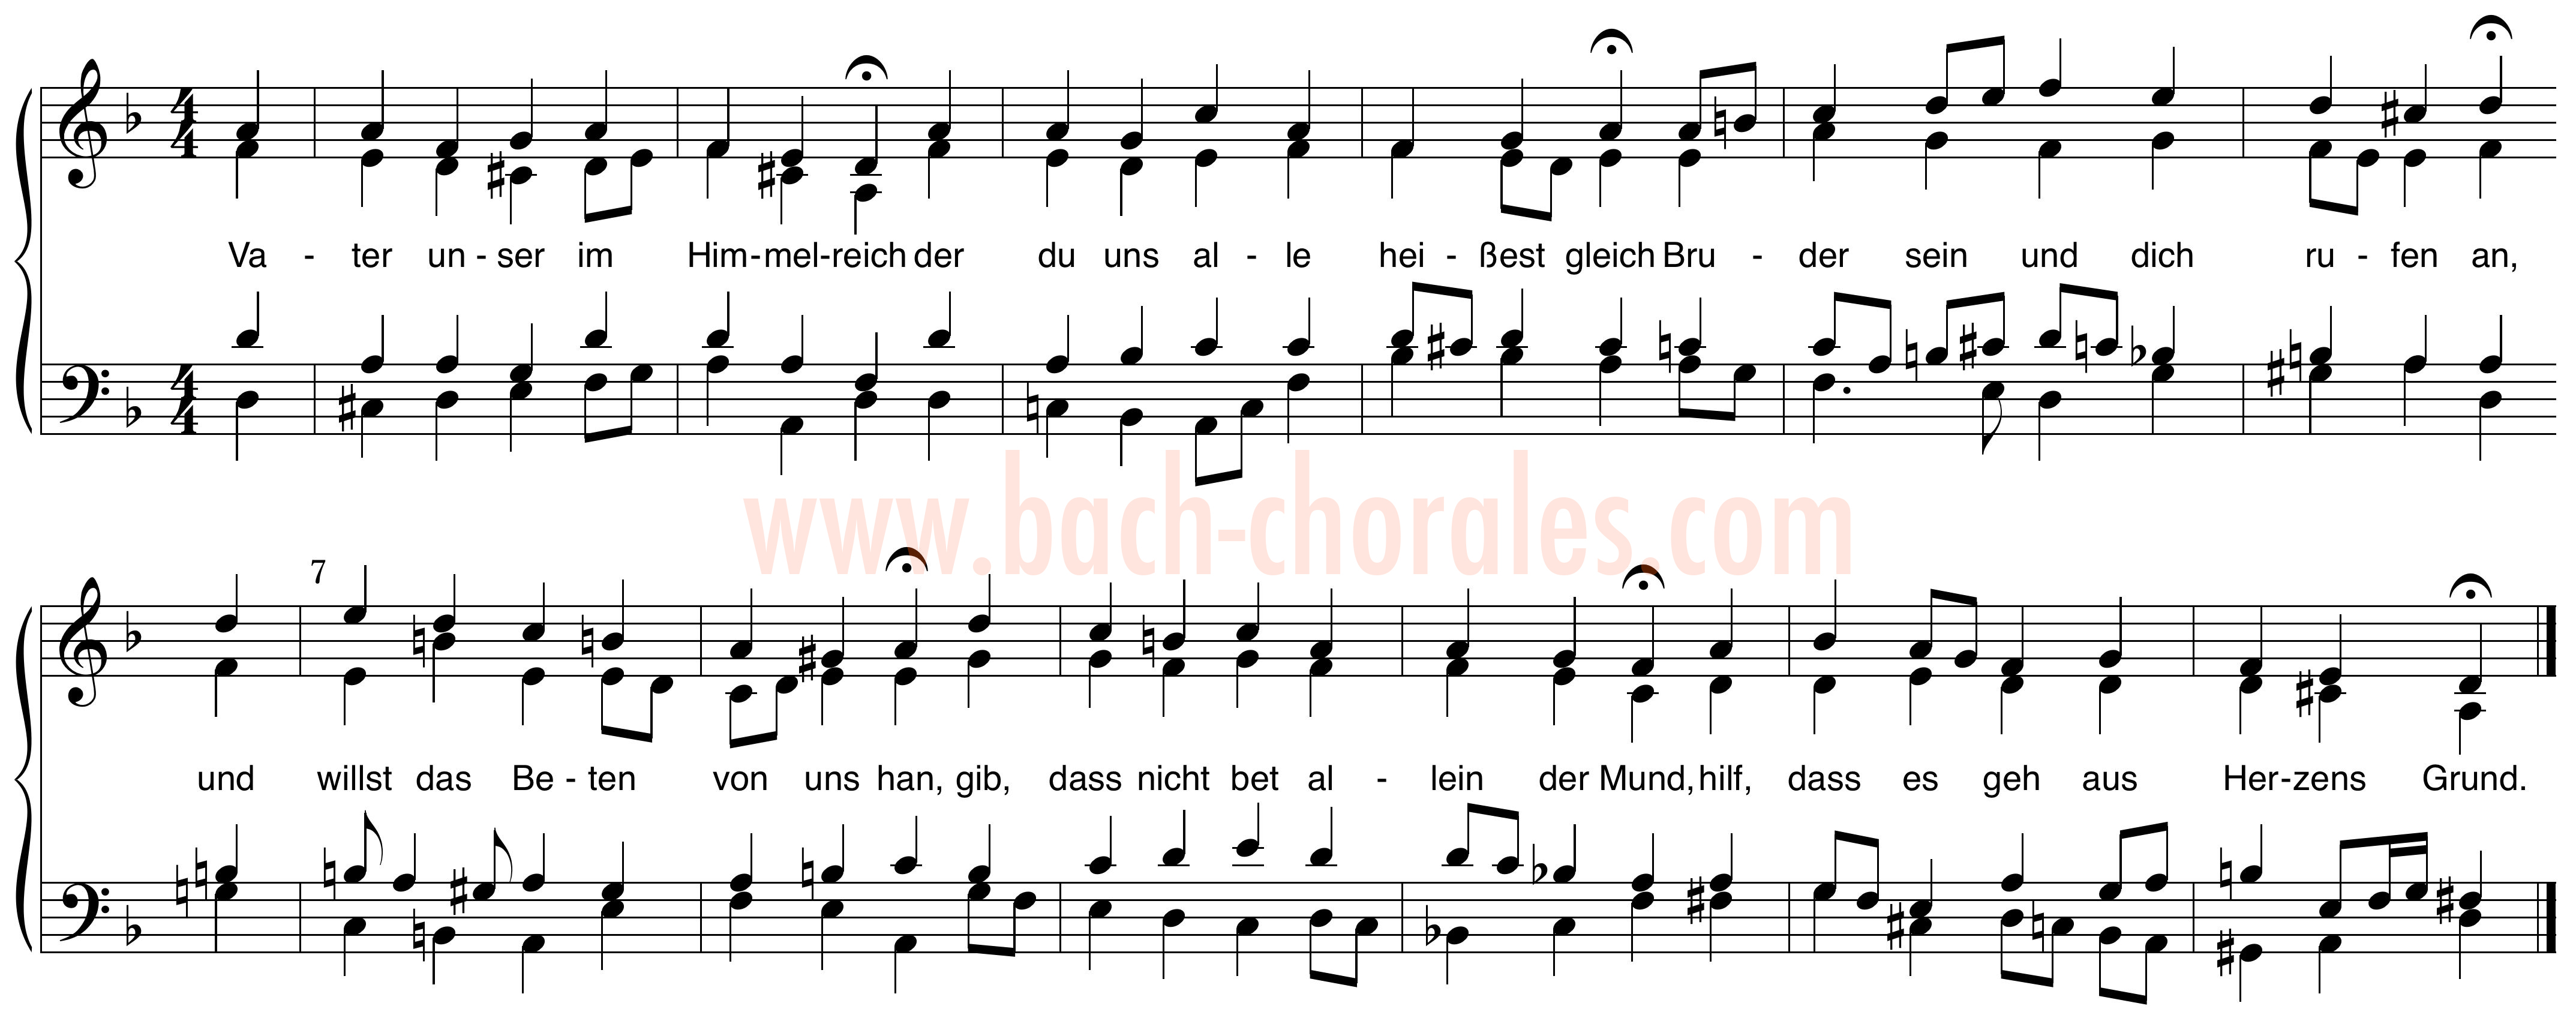 notenbeeld BWV 416 op https://www.bach-chorales.com/